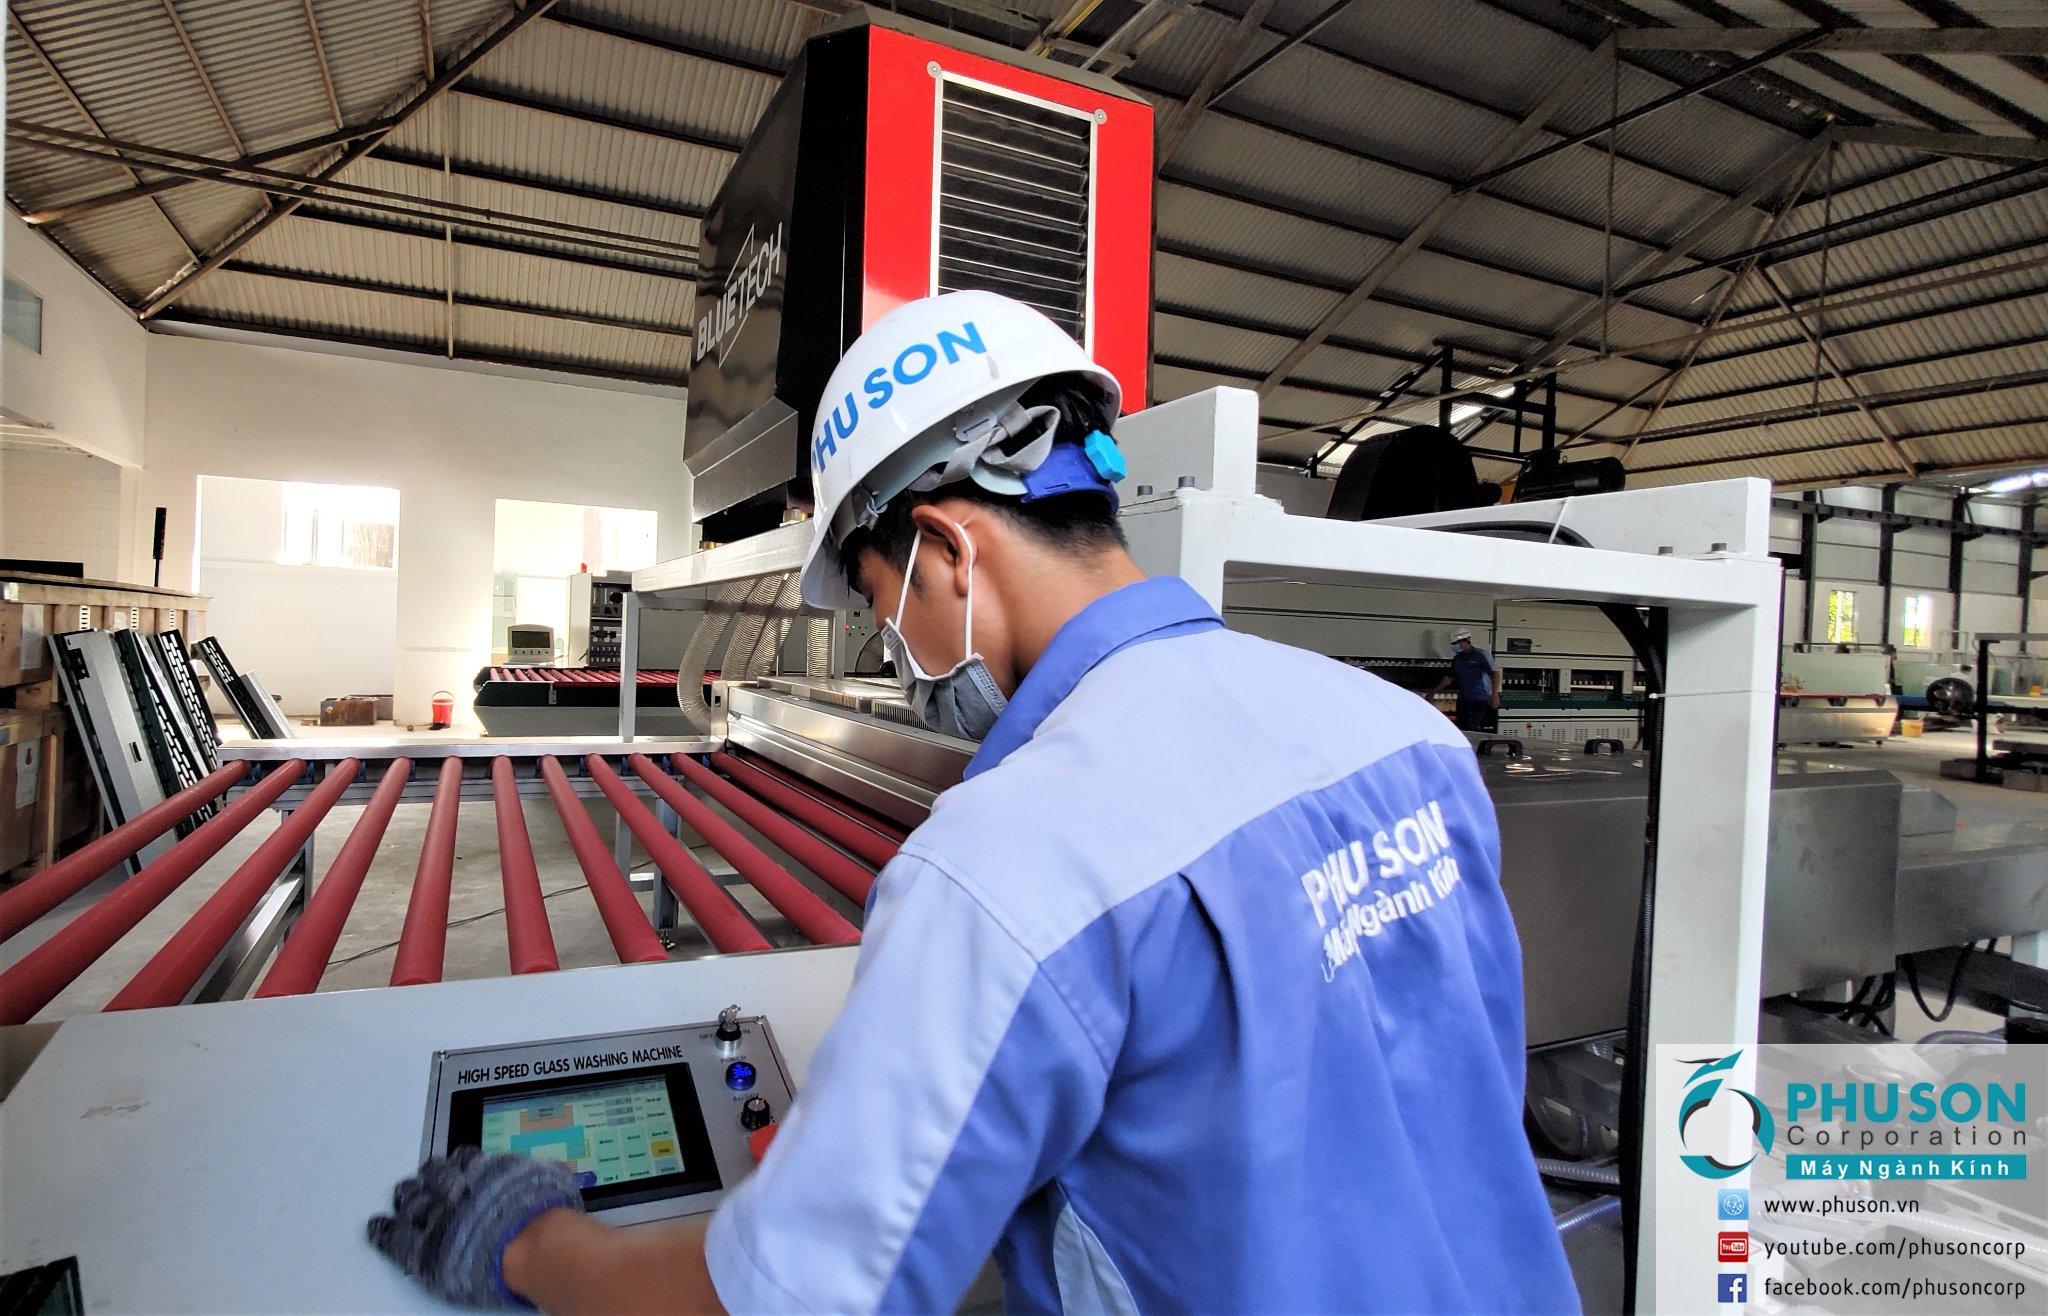 PHU SON Corporation HCM hoàn thành lắp đặt máy rửa và sấy khô kính BLUETECH tại nhà máy NGAI KHANH GLASS